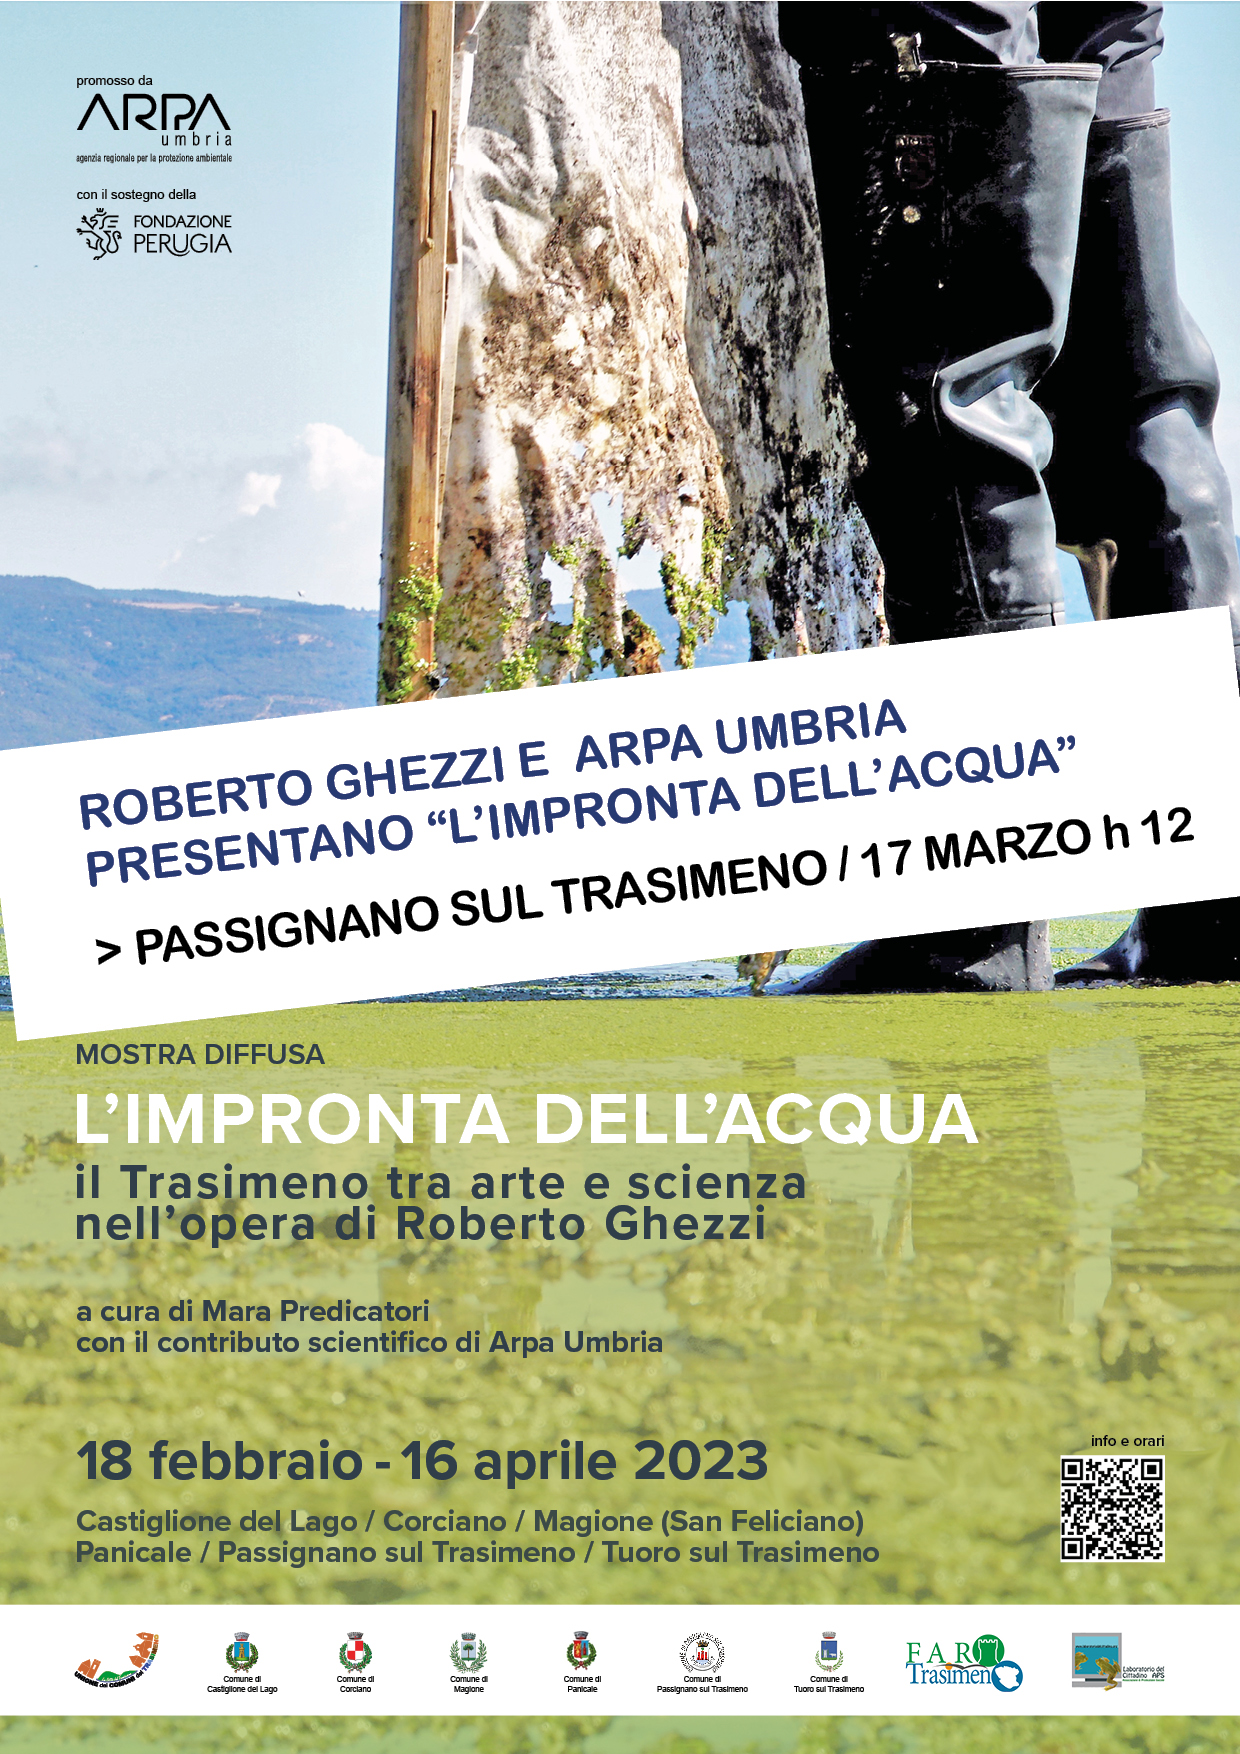 Passignano – Roberto Ghezzi e Arpa Umbria presentano “L’impronta dell’acqua”